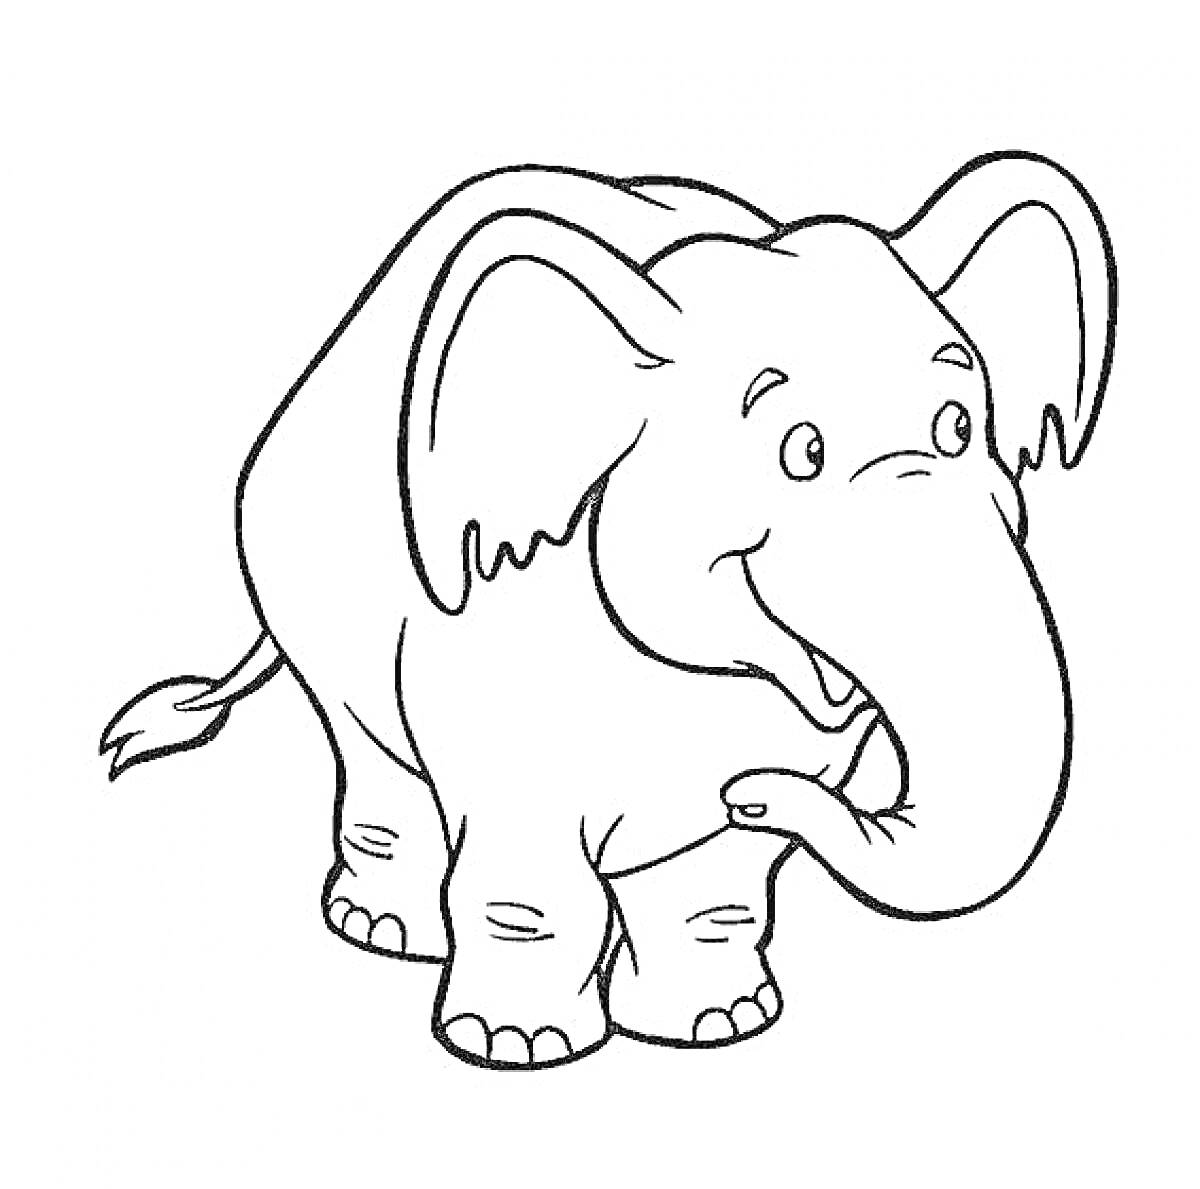 Раскраска Улыбающийся слон с вывернутым хоботом